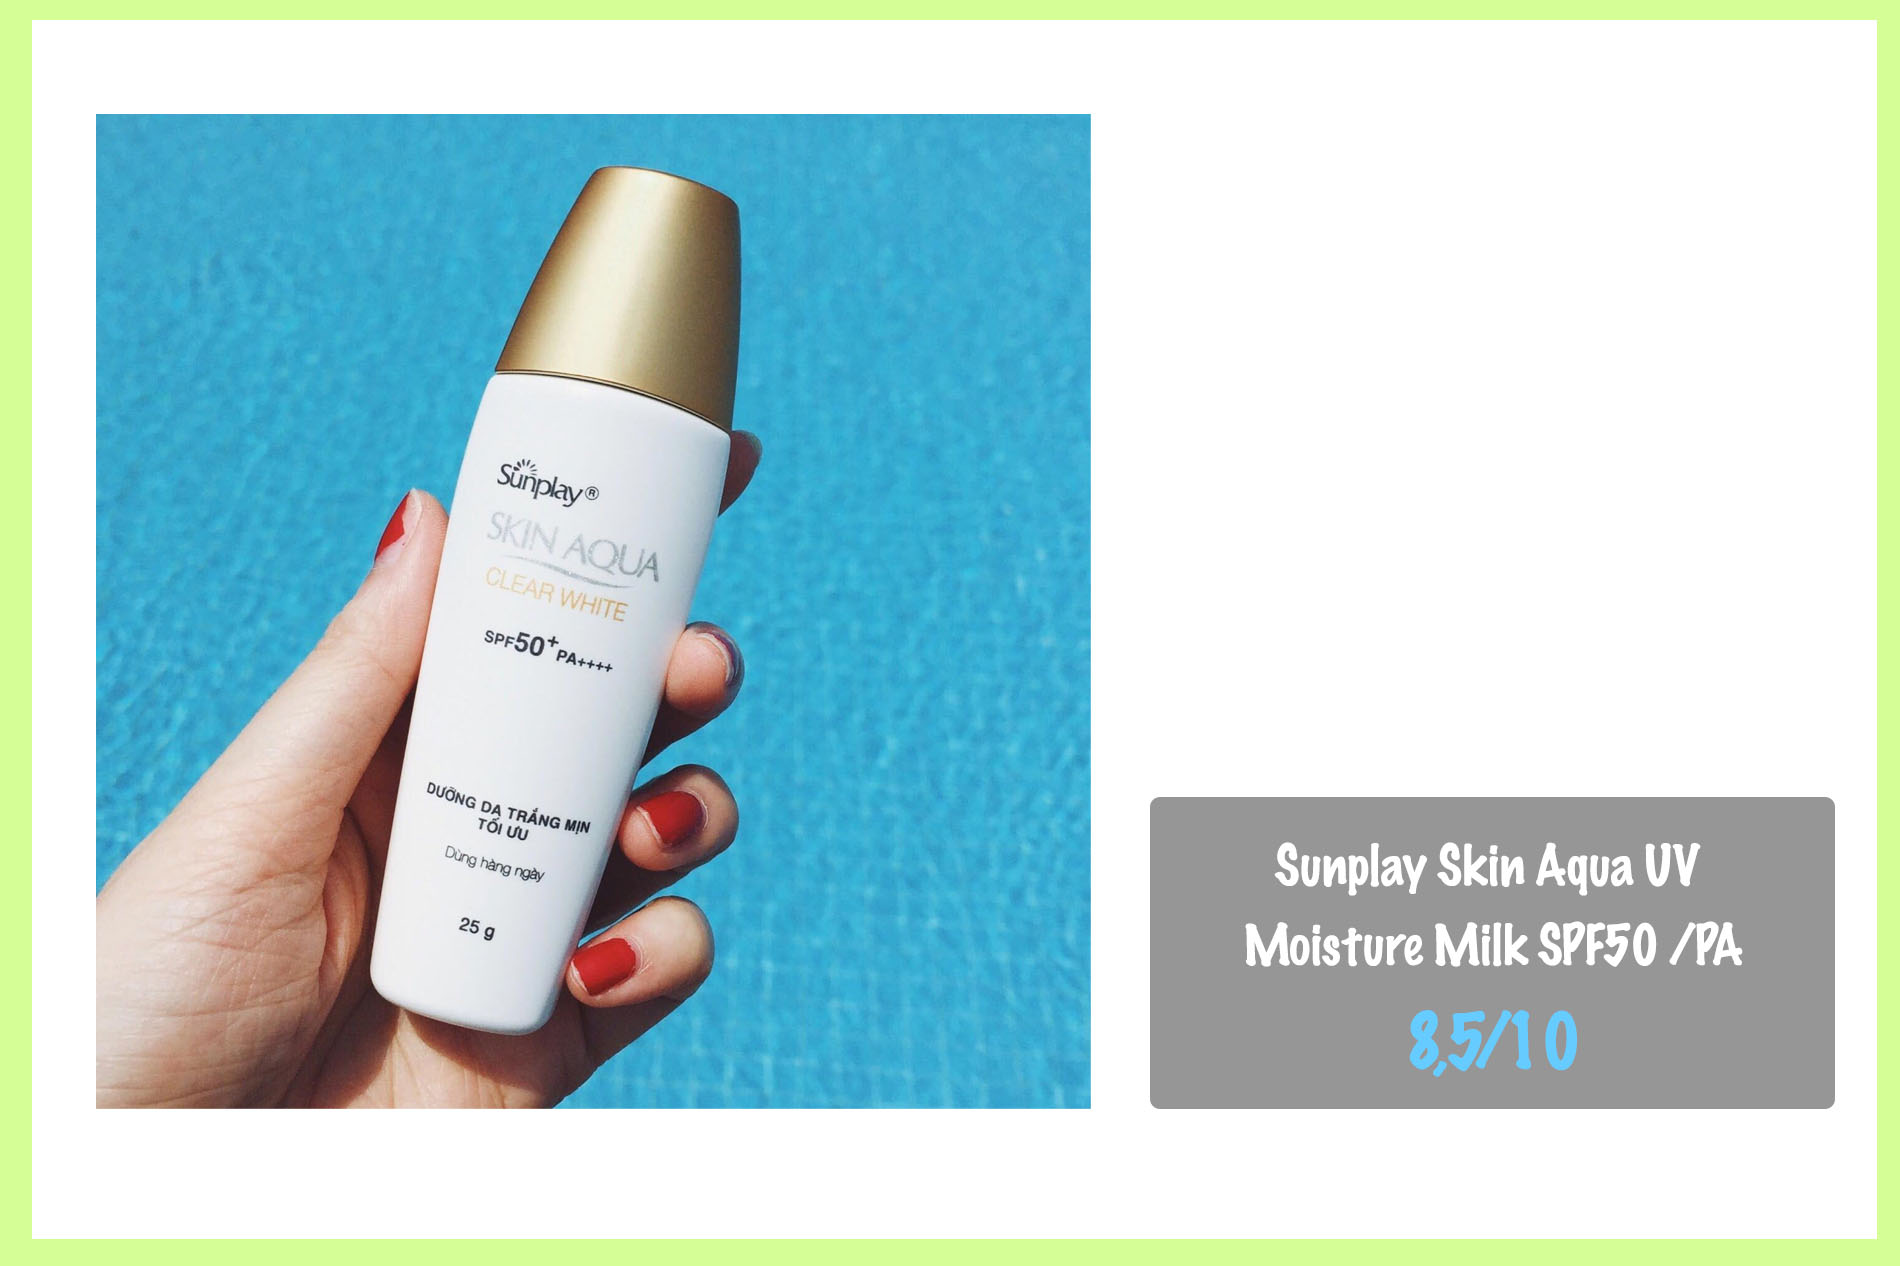 Kem chống nắng cho da khô giá bình dân Sunplay Skin Aqua UV Moisture Milk SPF50 /PA